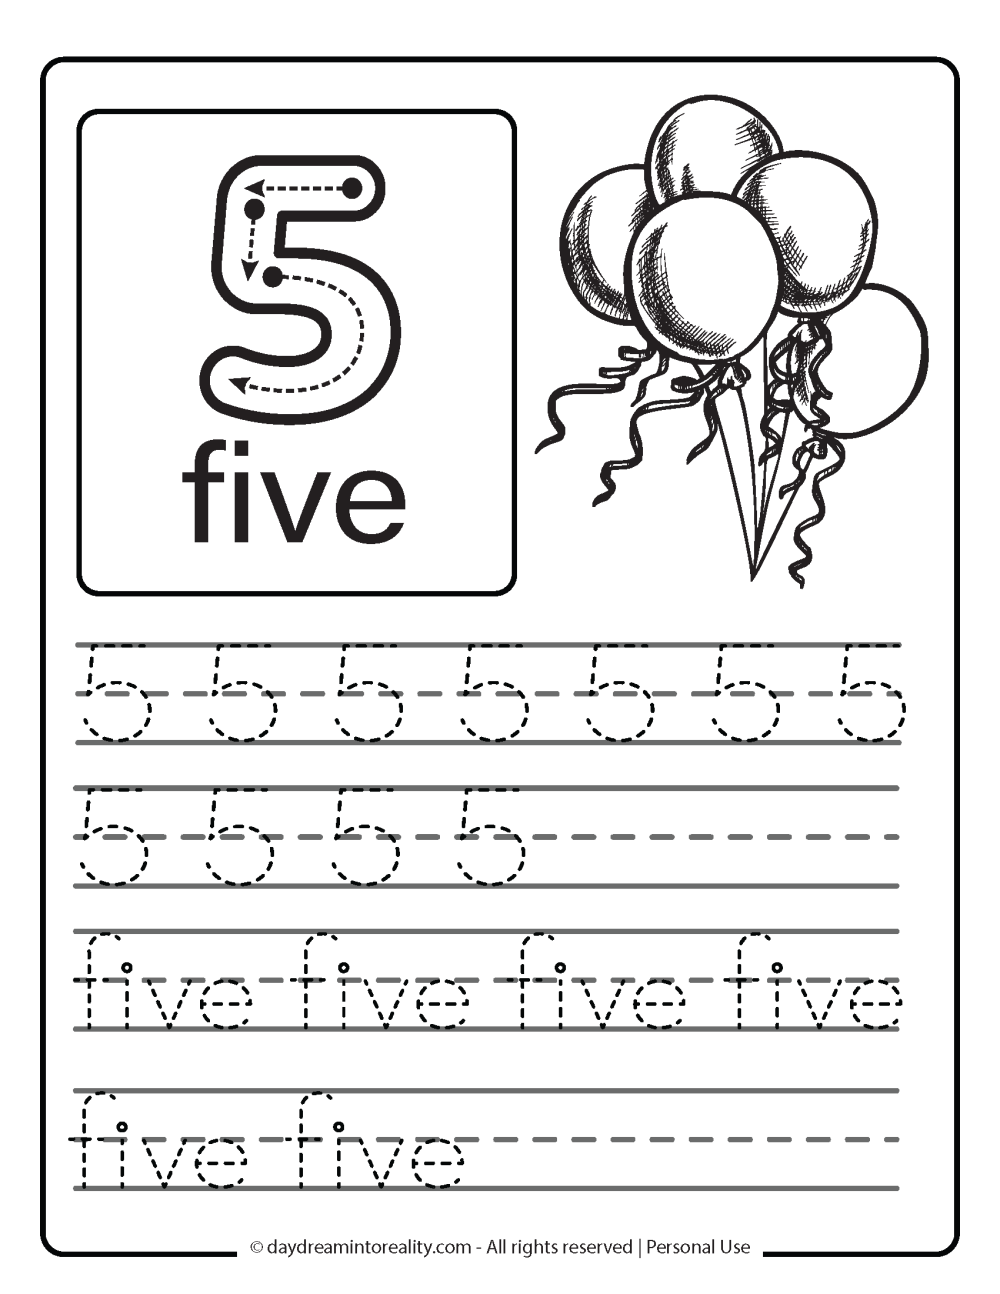 number 5 (numeric and word) worksheet free printable